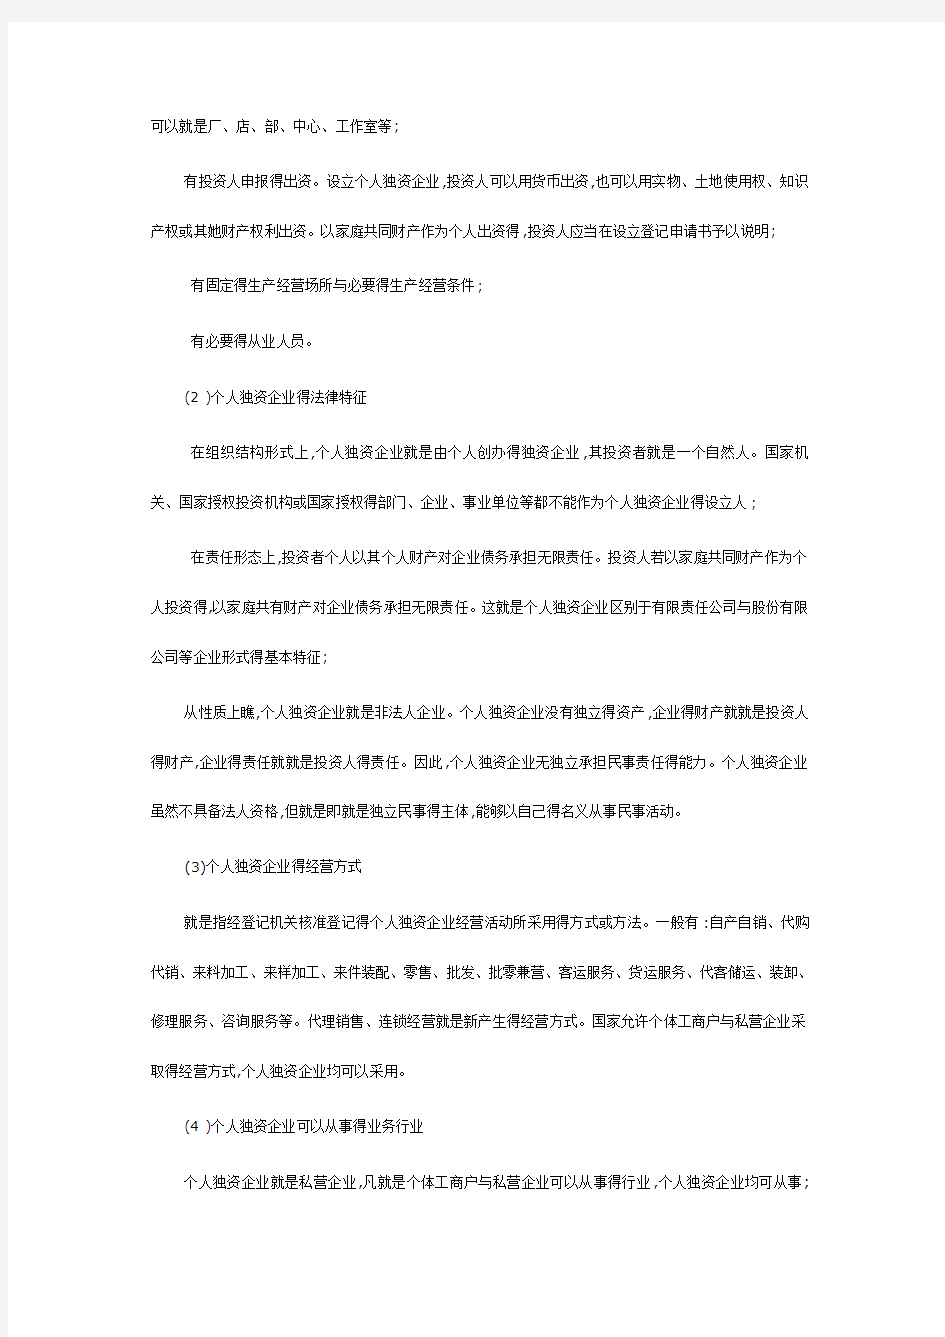 中国企业的法律形式